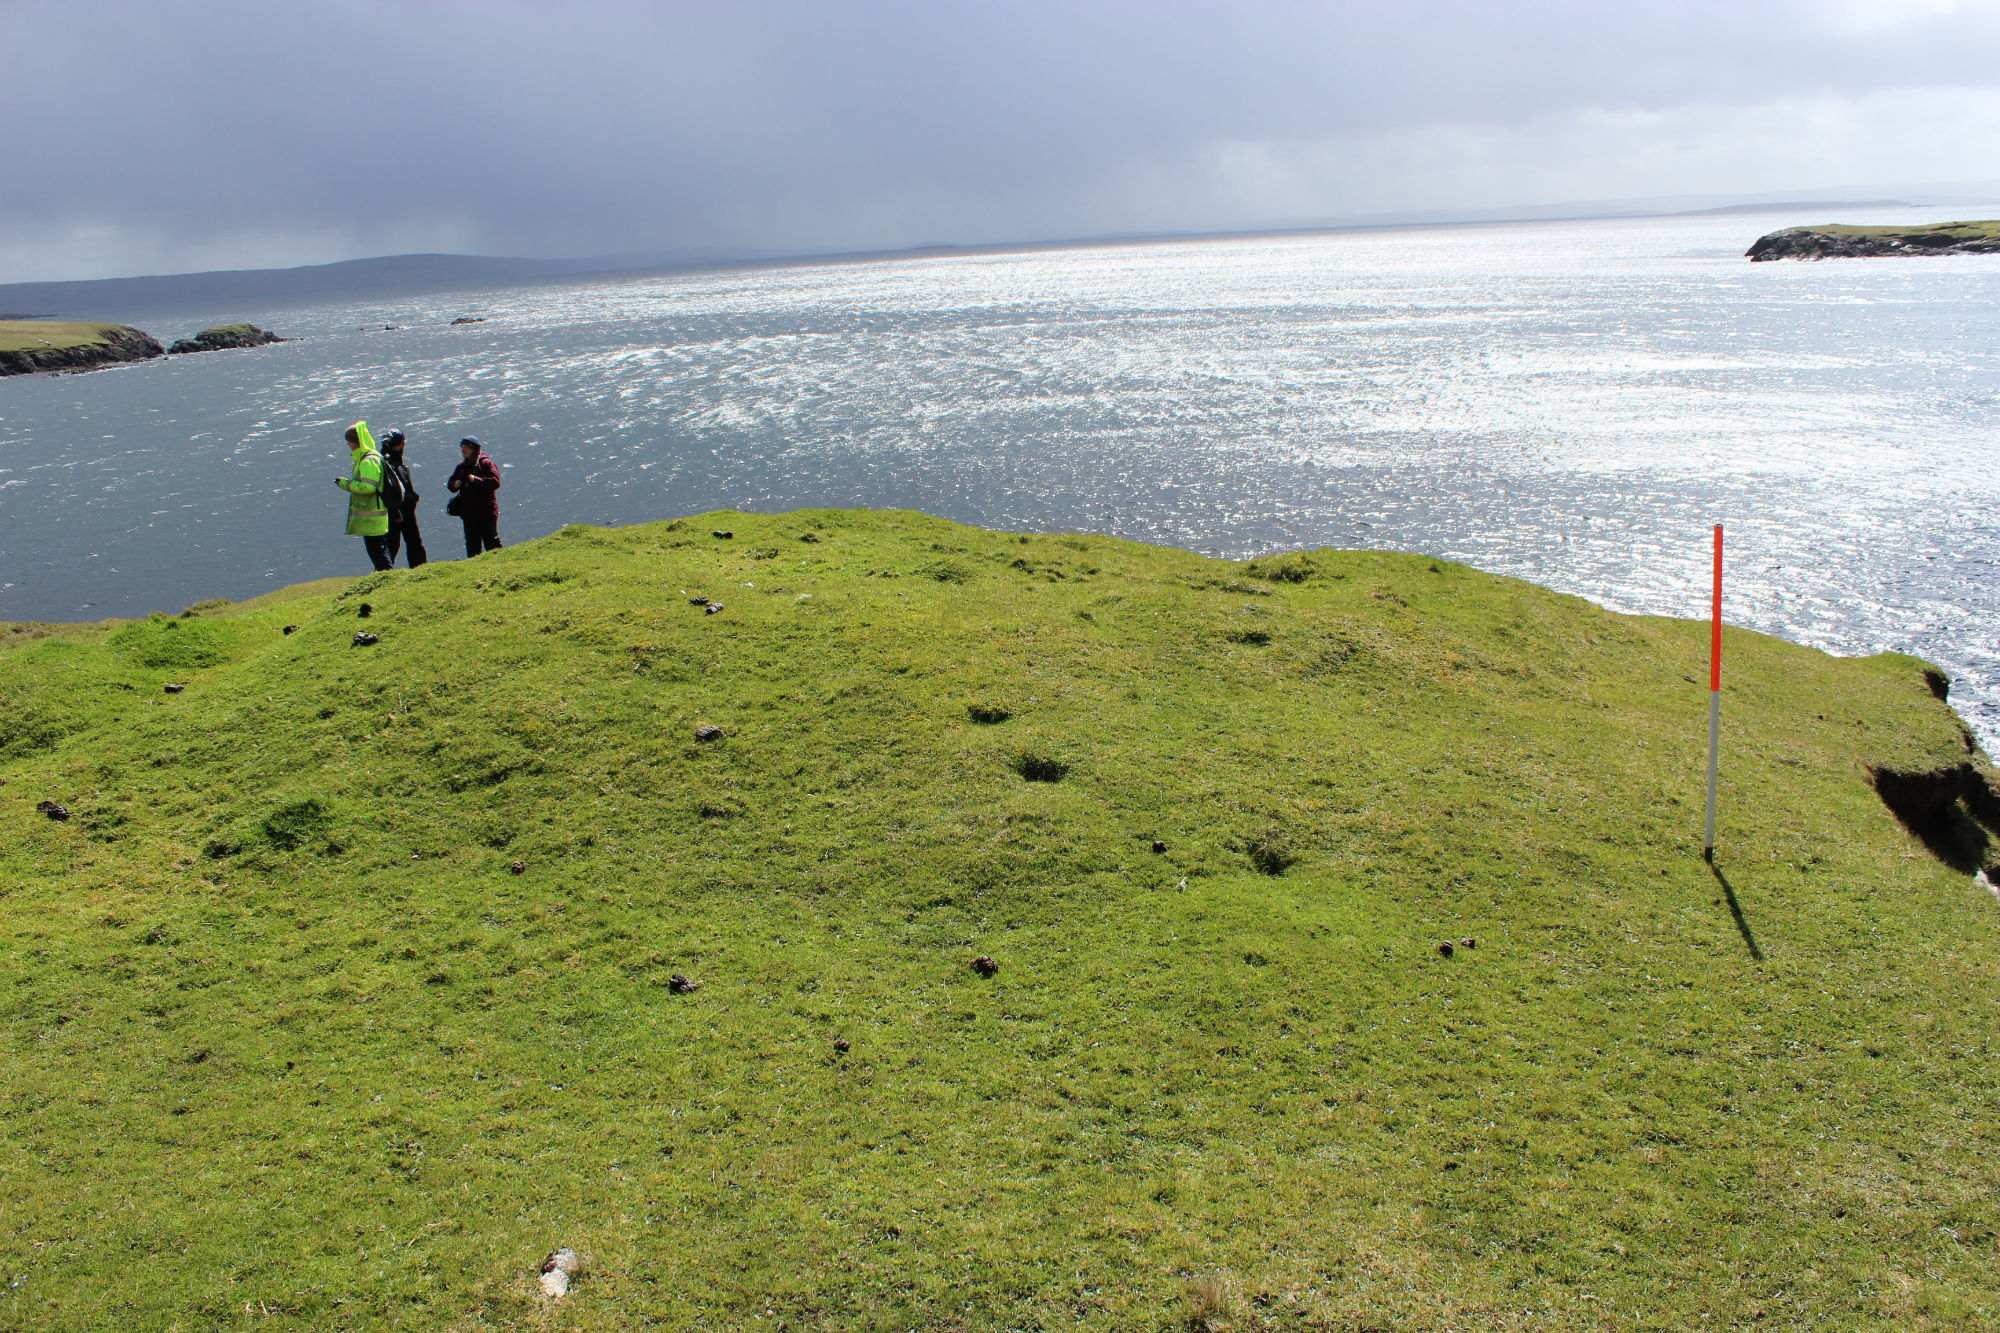 Landward edge of mound, looking southeast